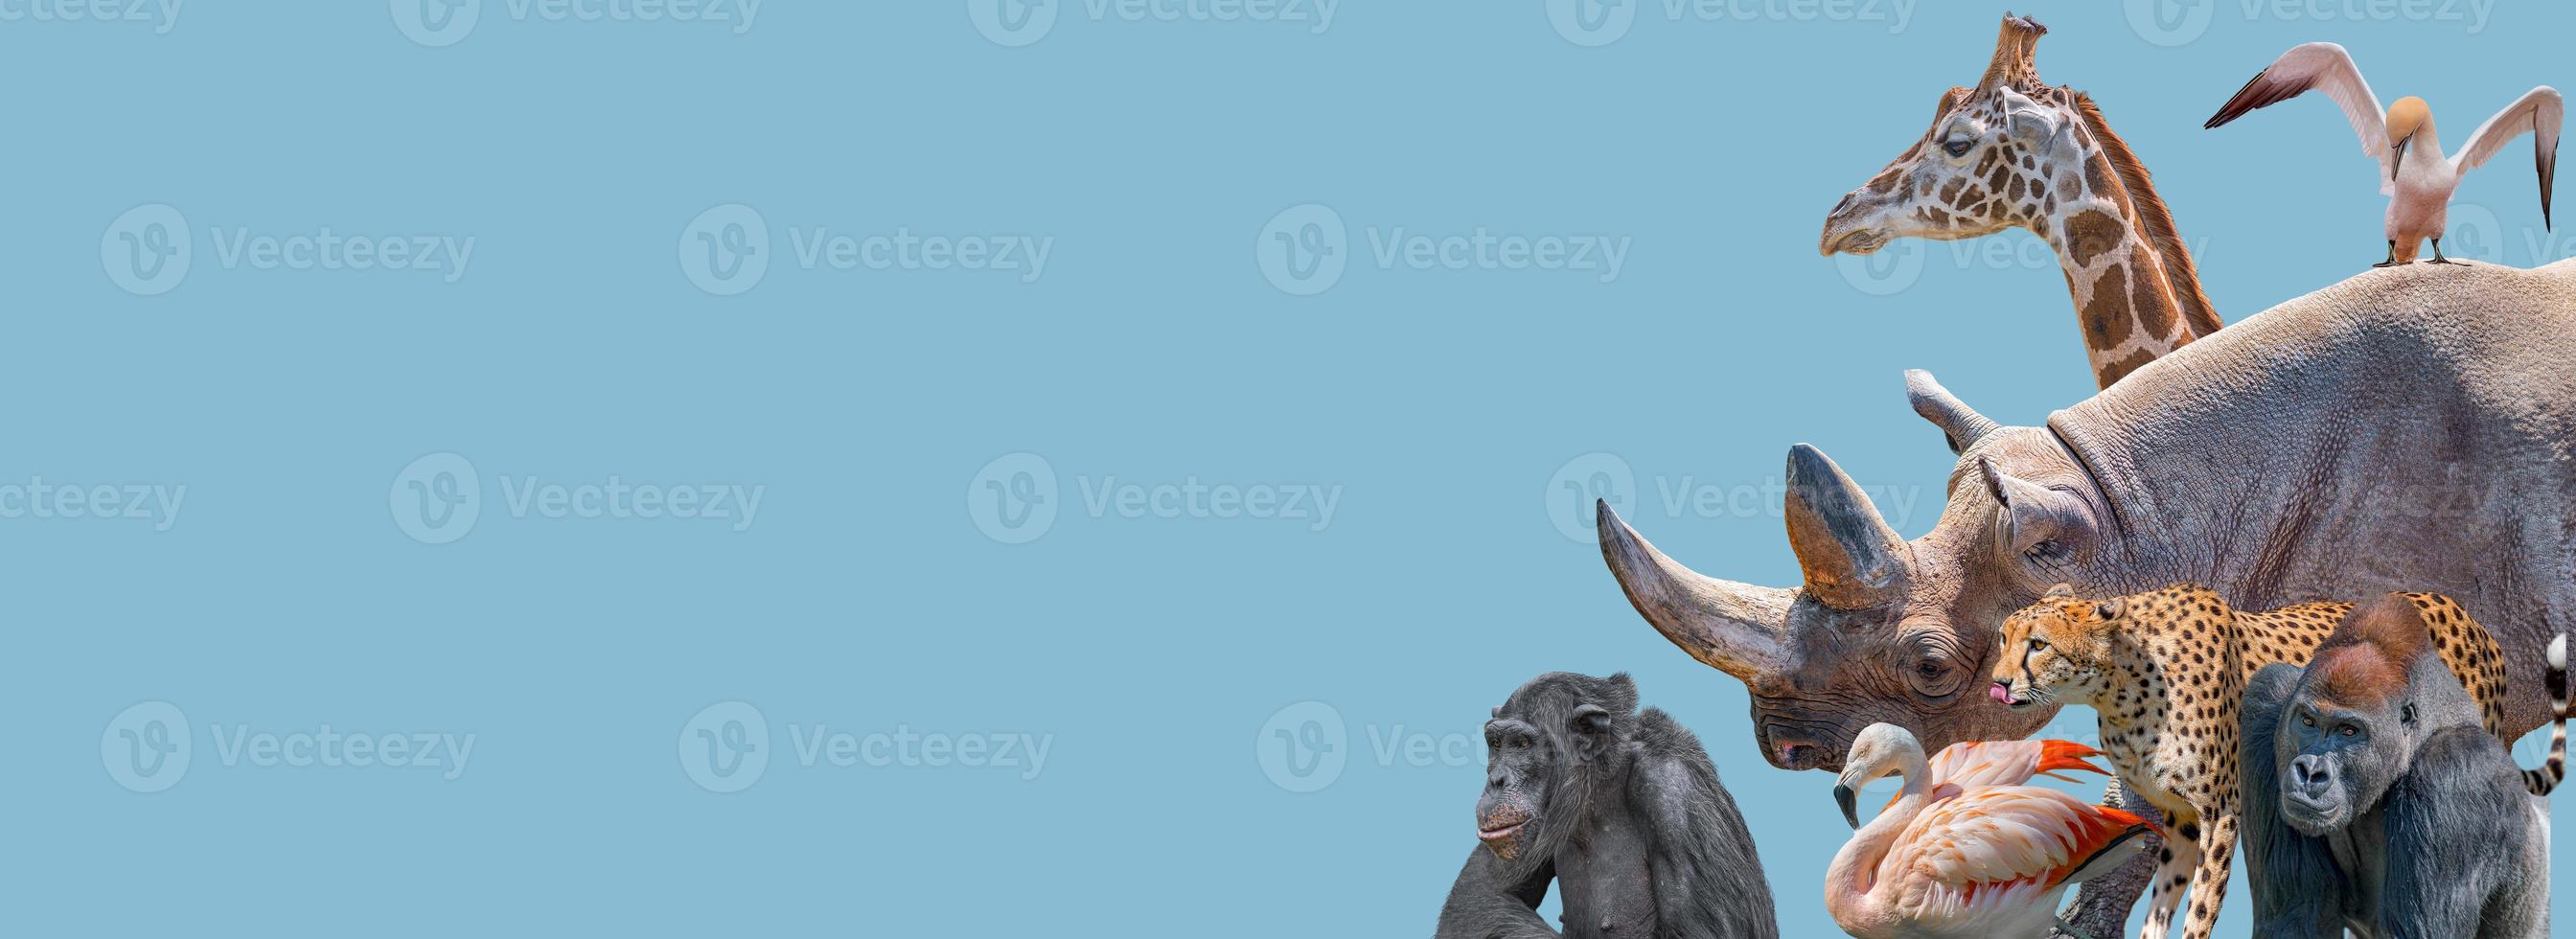 banner met kwetsbare dieren in het wild in Afrika, neushoorn, cheetah, gorilla, giraf, olifant, flamingo, chimpansee op blauwe hemel effen achtergrond met kopie ruimte. concept biodiversiteit en behoud. foto